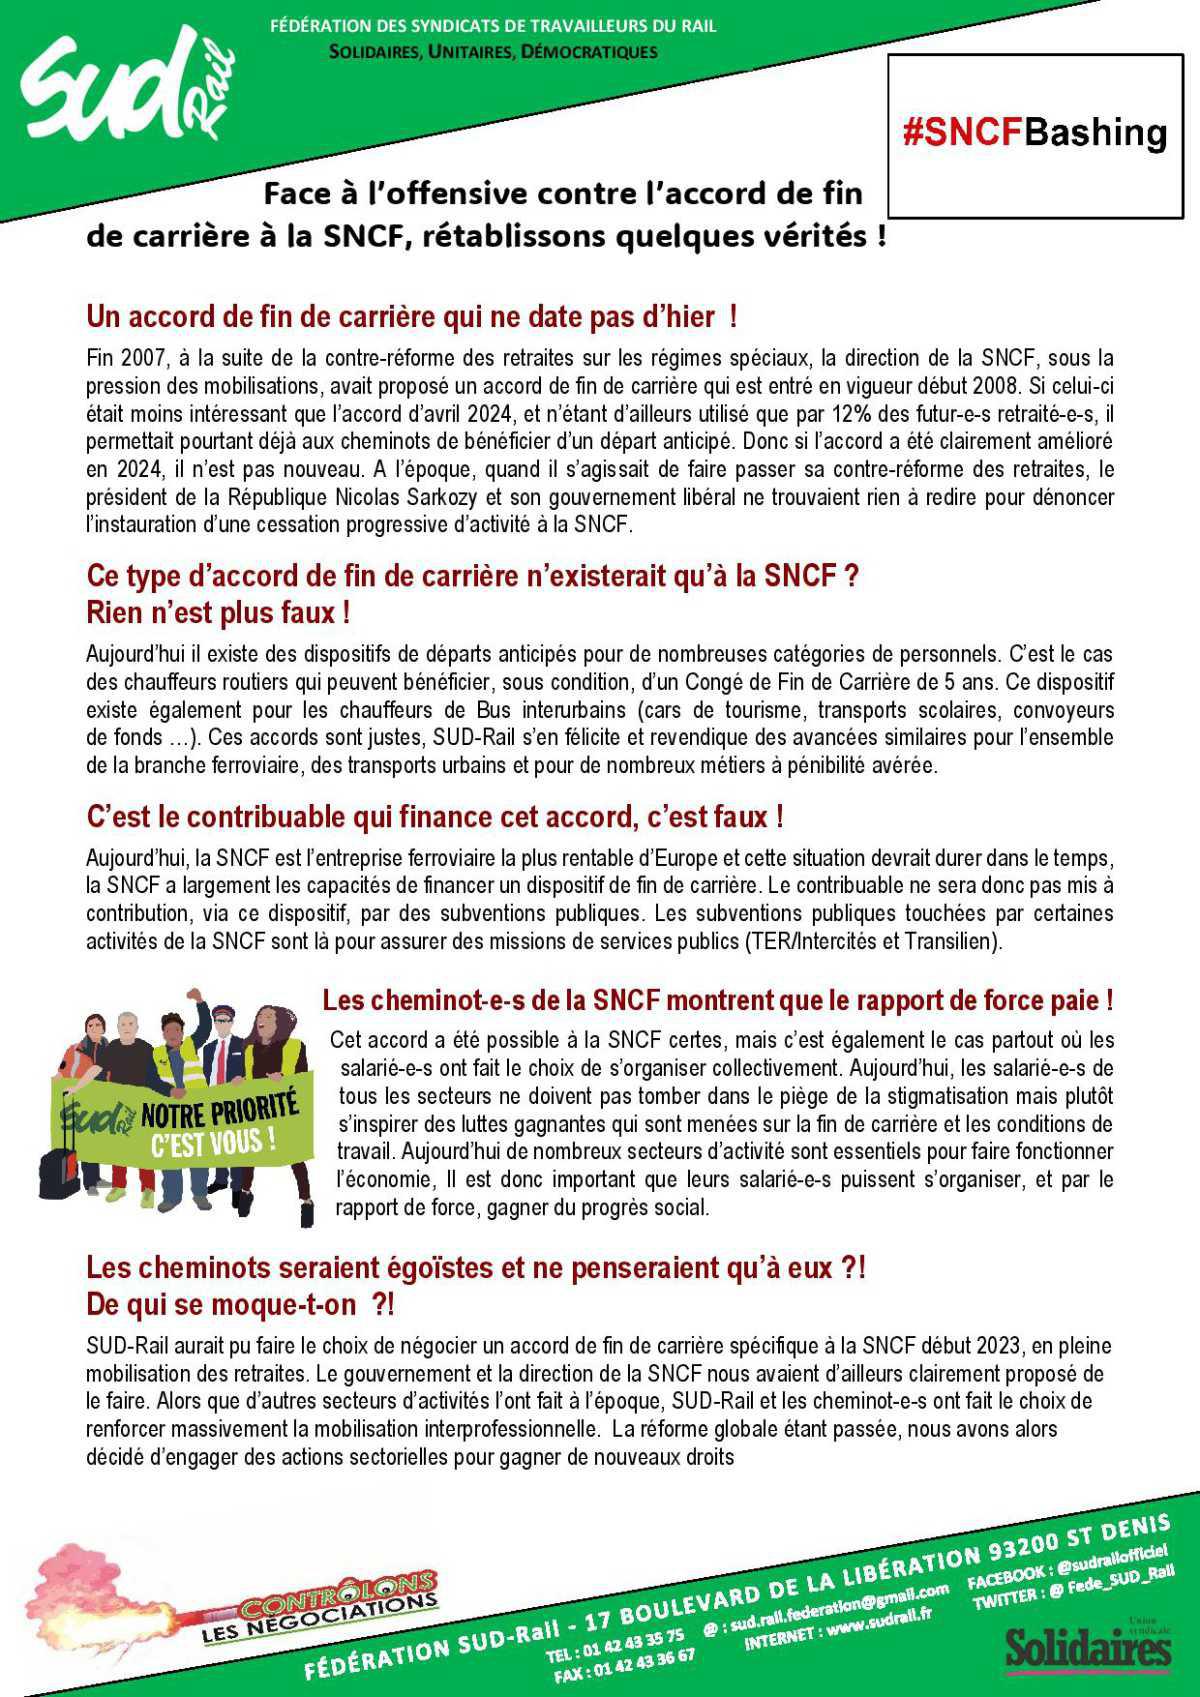 Face à l’offensive contre l’accord de fin de carrière à la SNCF, rétablissons quelques vérités !